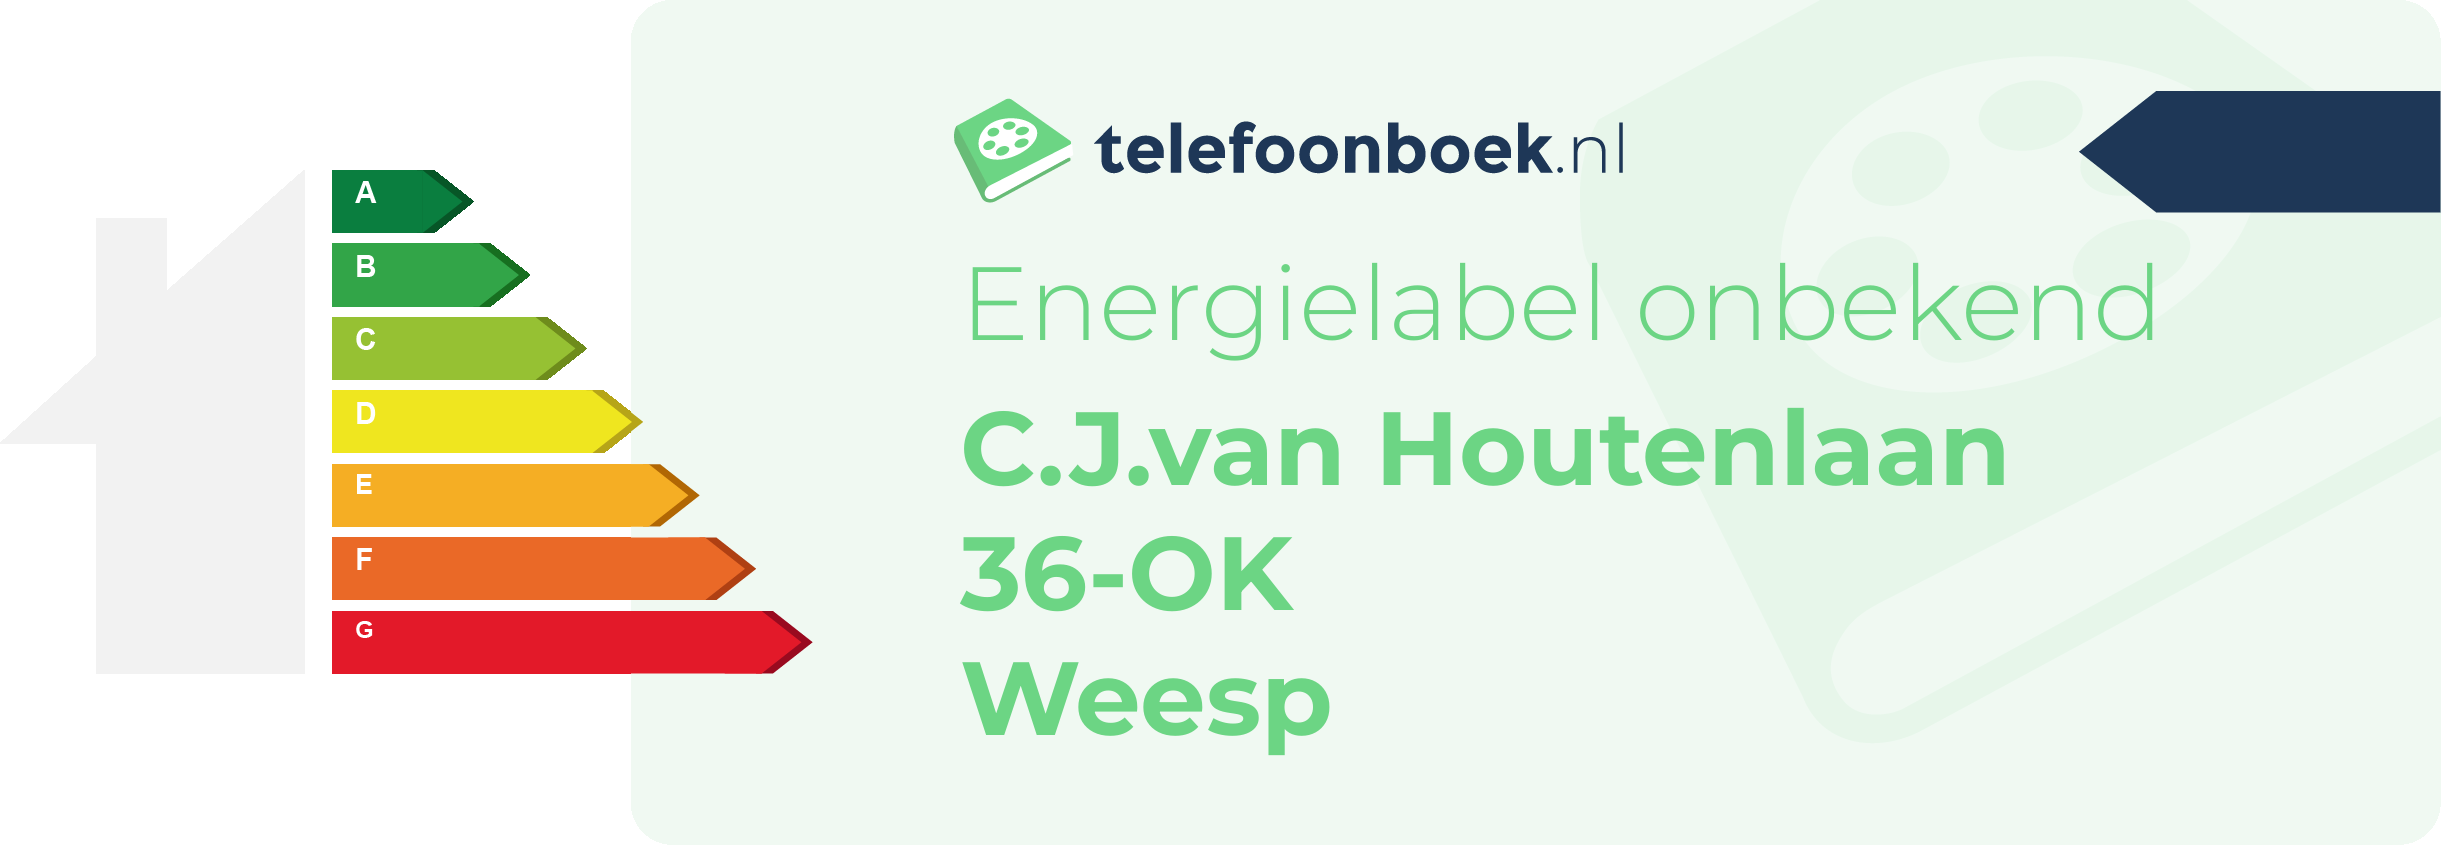 Energielabel C.J.van Houtenlaan 36-OK Weesp